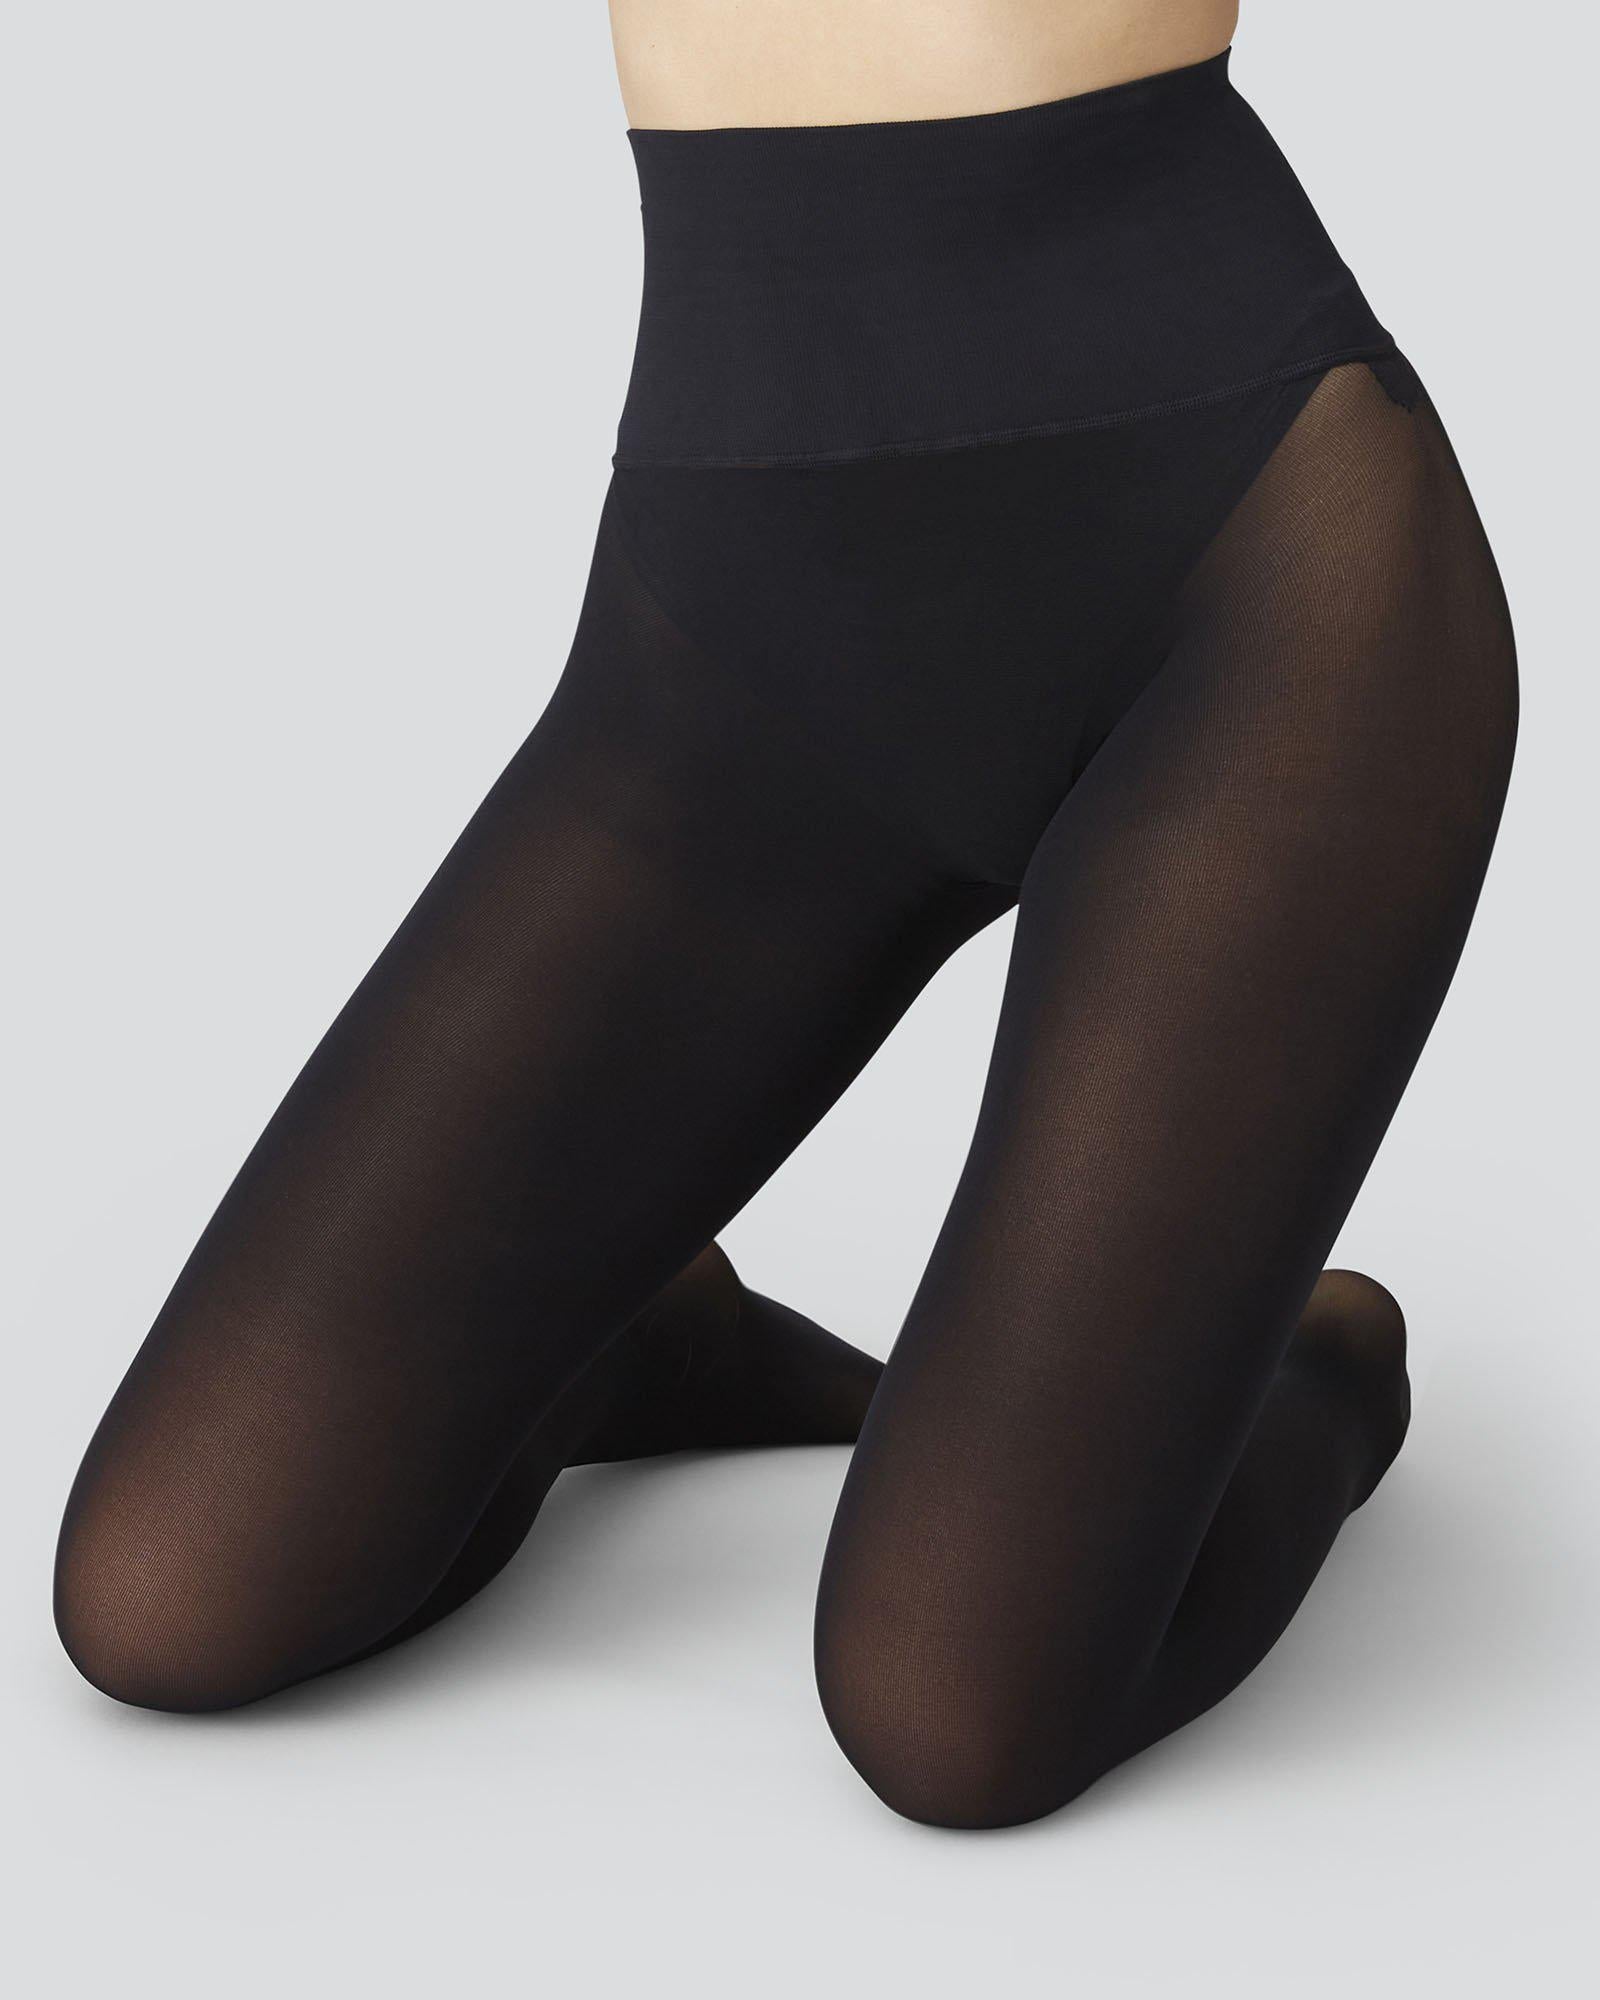 40 denier seamless sheer tights, black, Women's socks